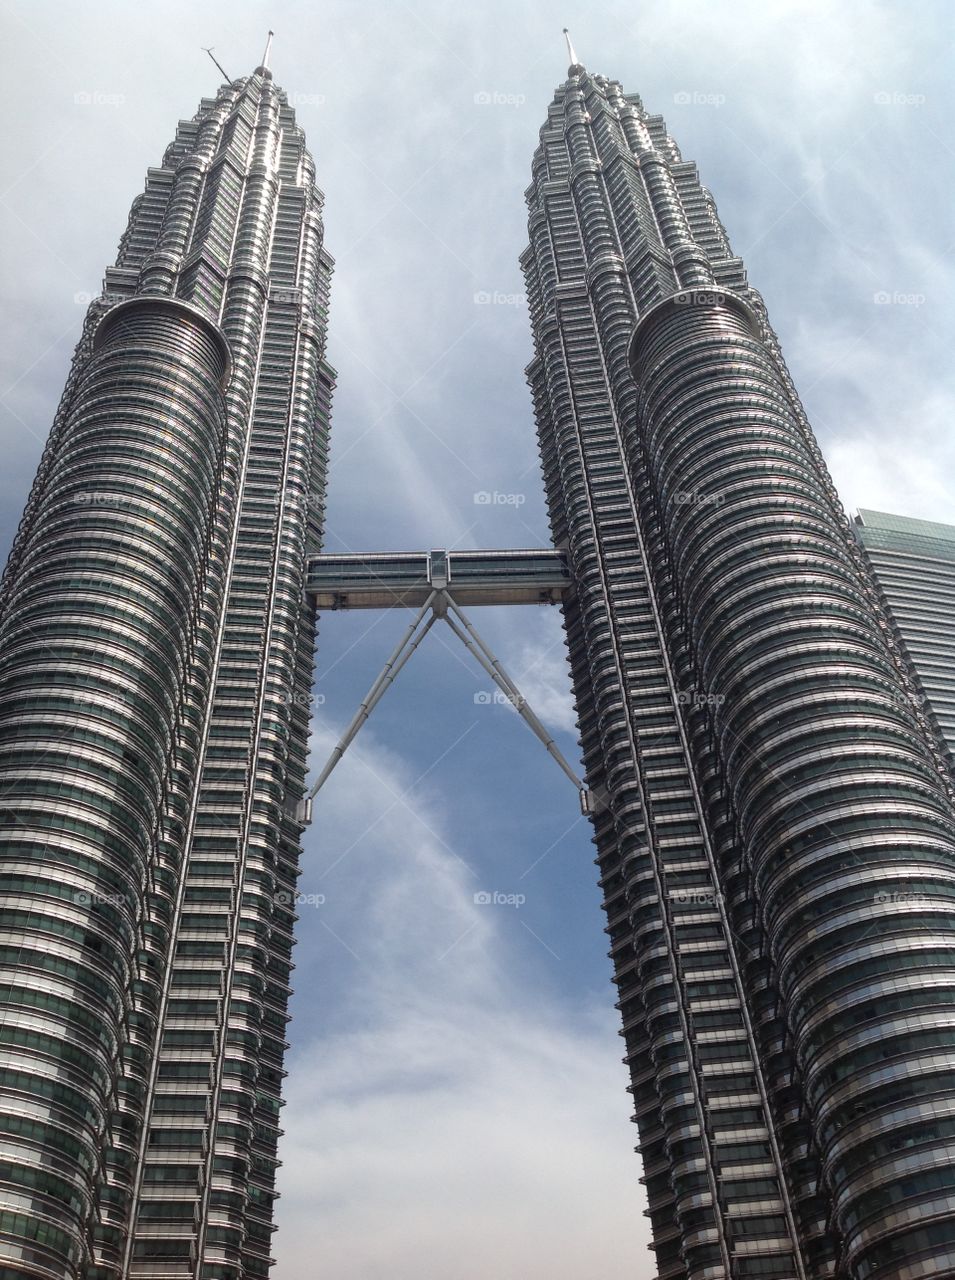 Twins building 
Petronas Towers